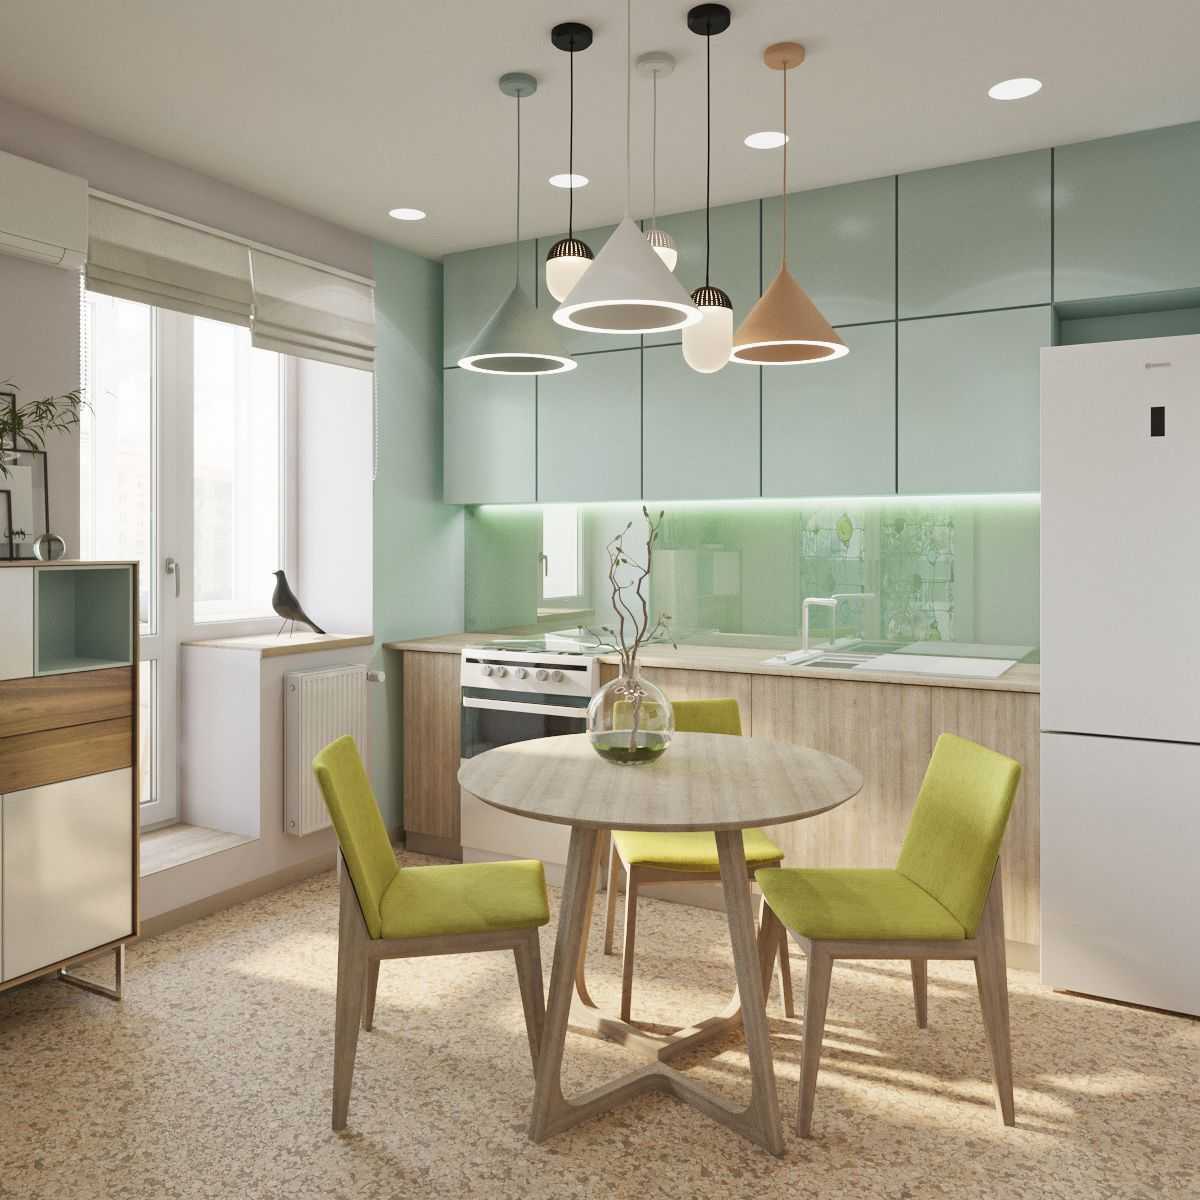 Кухня в пастельных тонах: дизайн кухни со светлым гарнитуром с яркими .